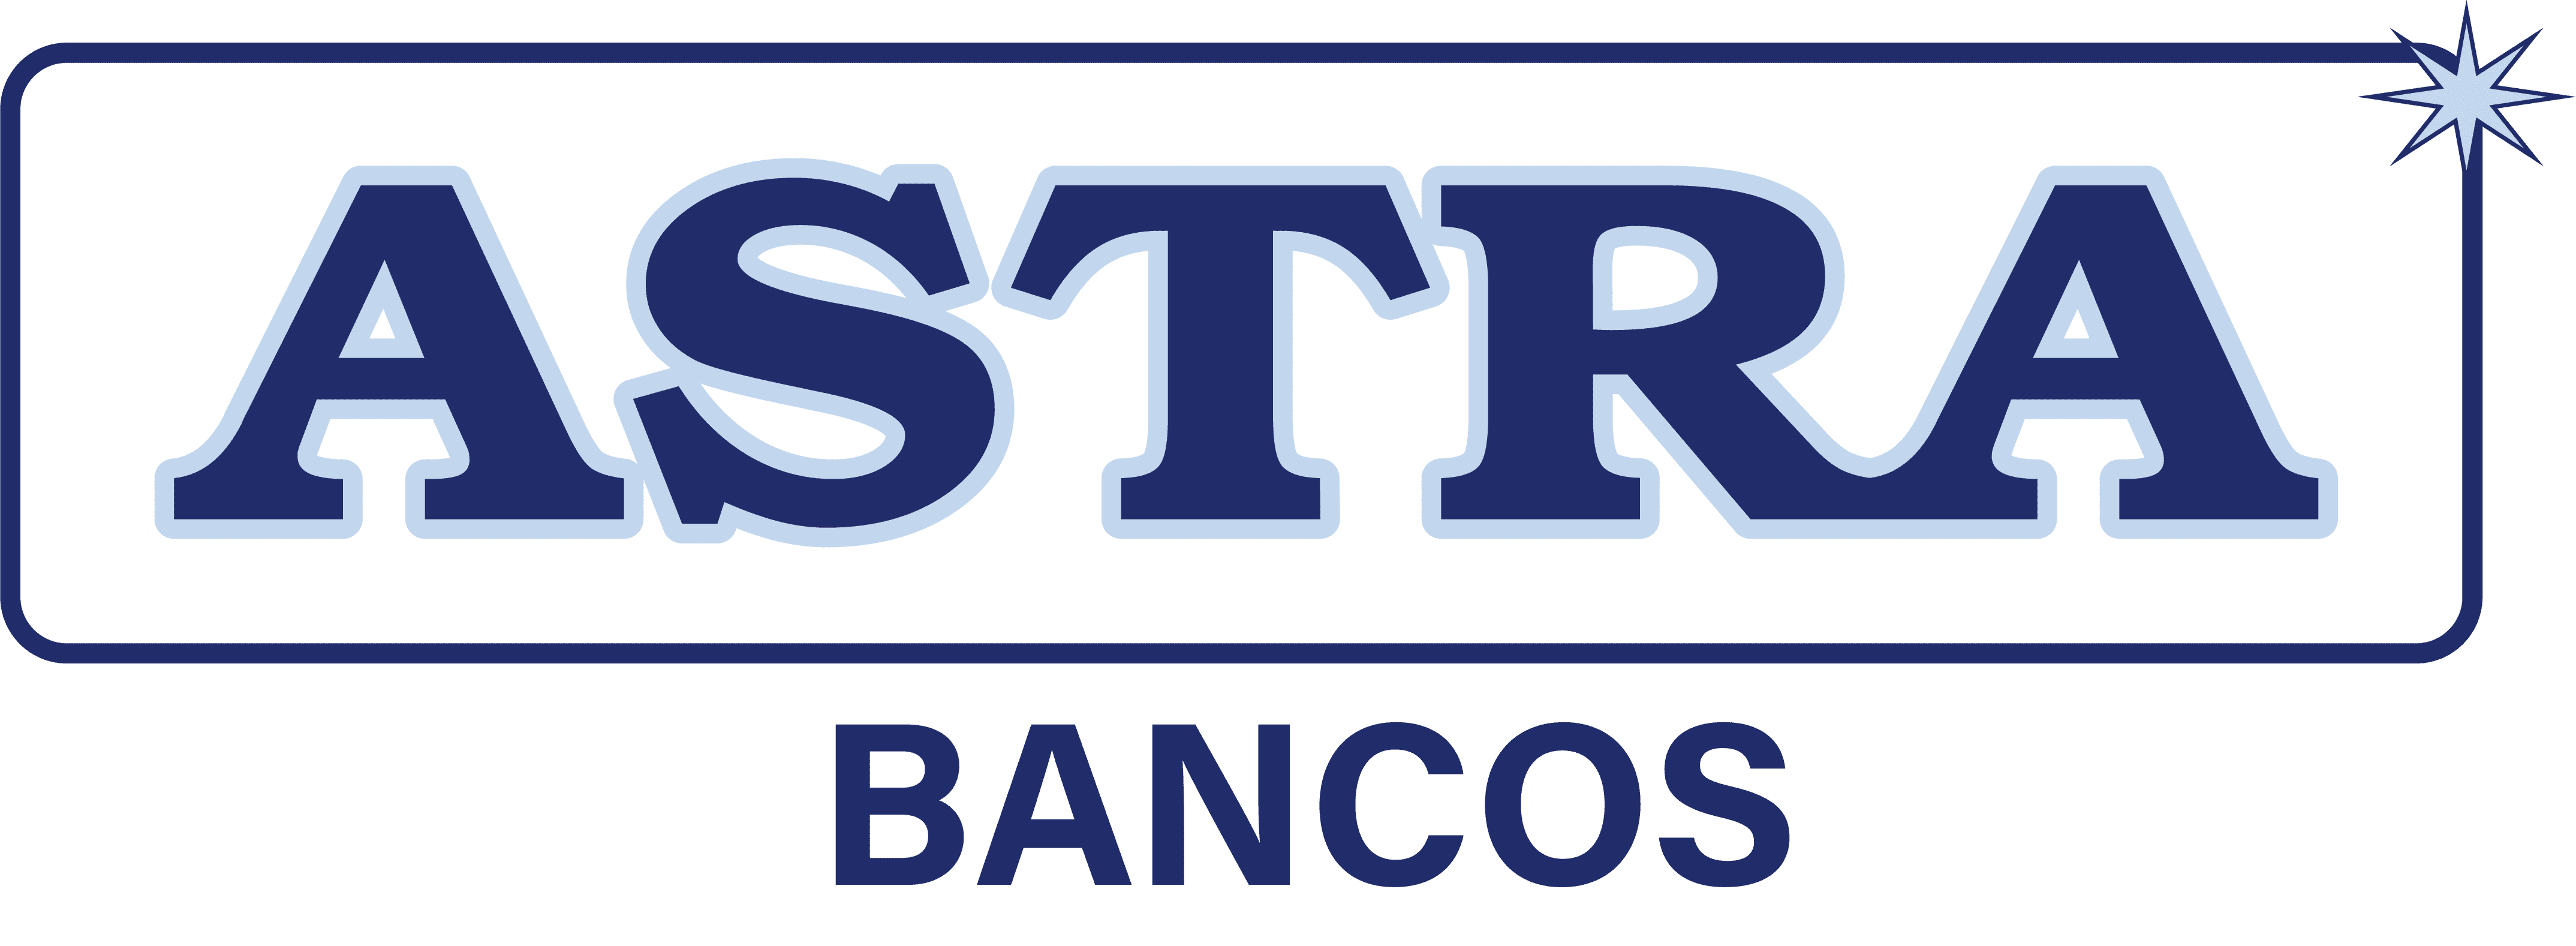 logotipo_astrabancos